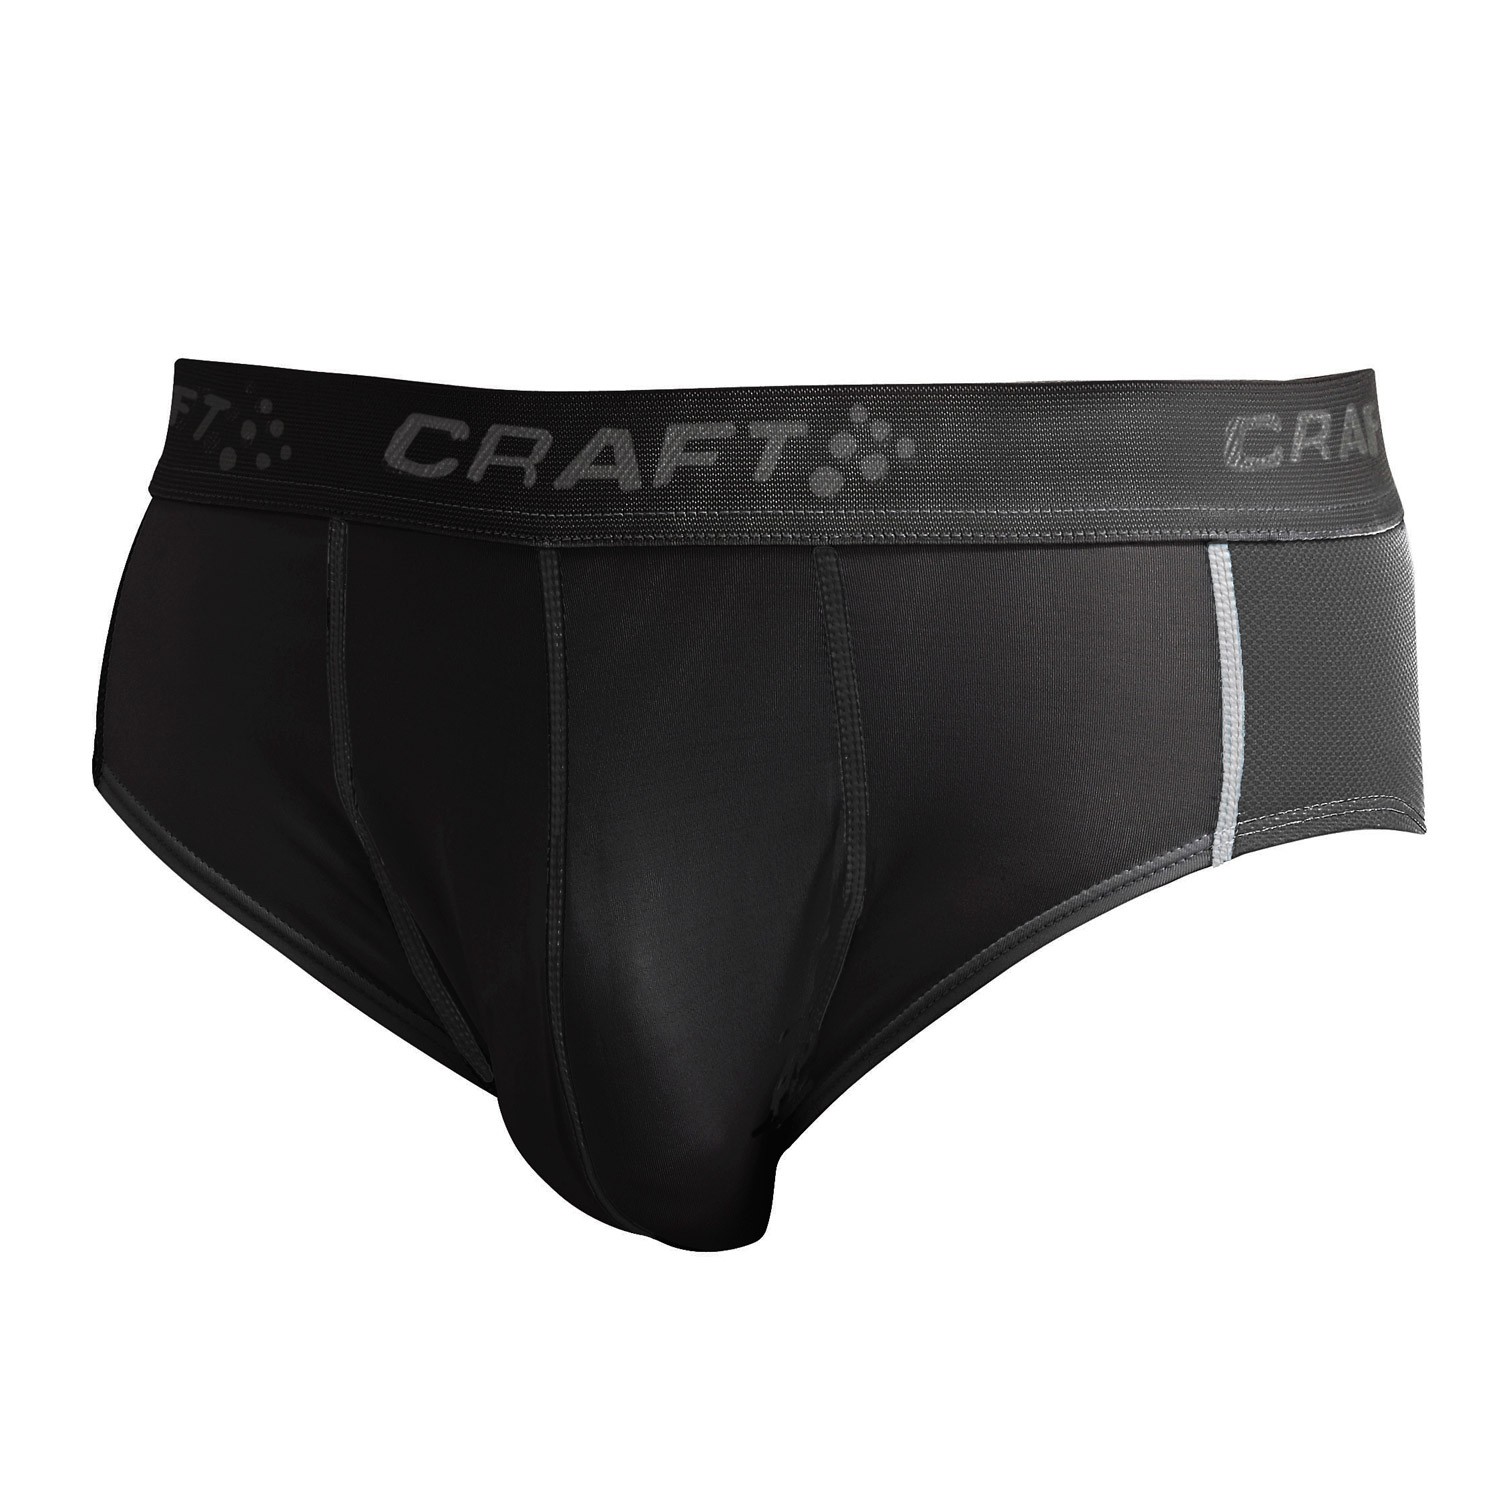 Craft Cool Briefs with Mesh Men - Boxer - Trunks - Underwear - Timarco ...